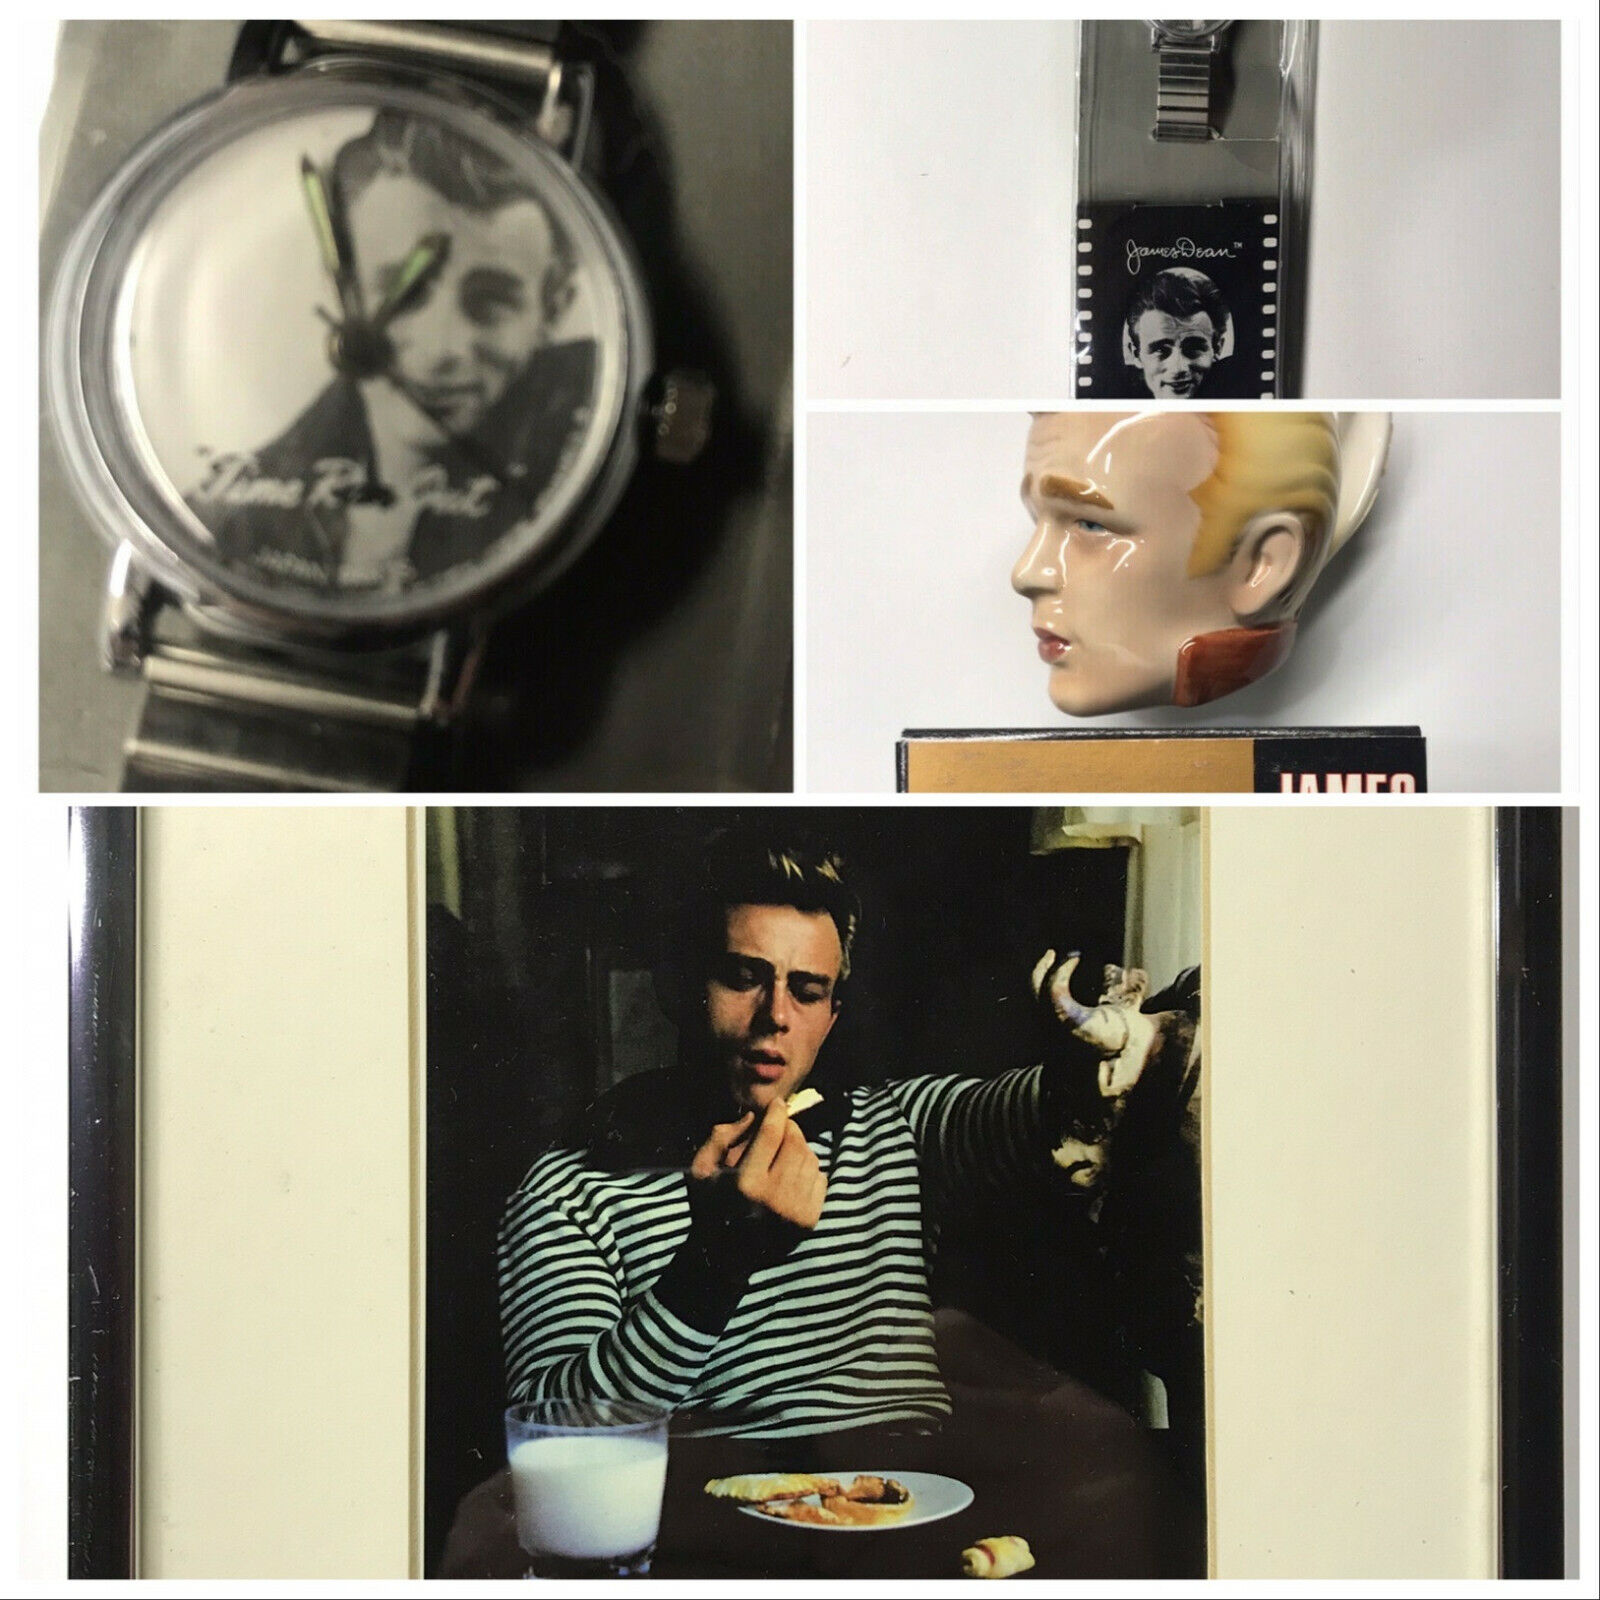 Vintage 1987 James Dean Watch Memories NIP & 1988 Face Mugs (2) by Clay Art NIB